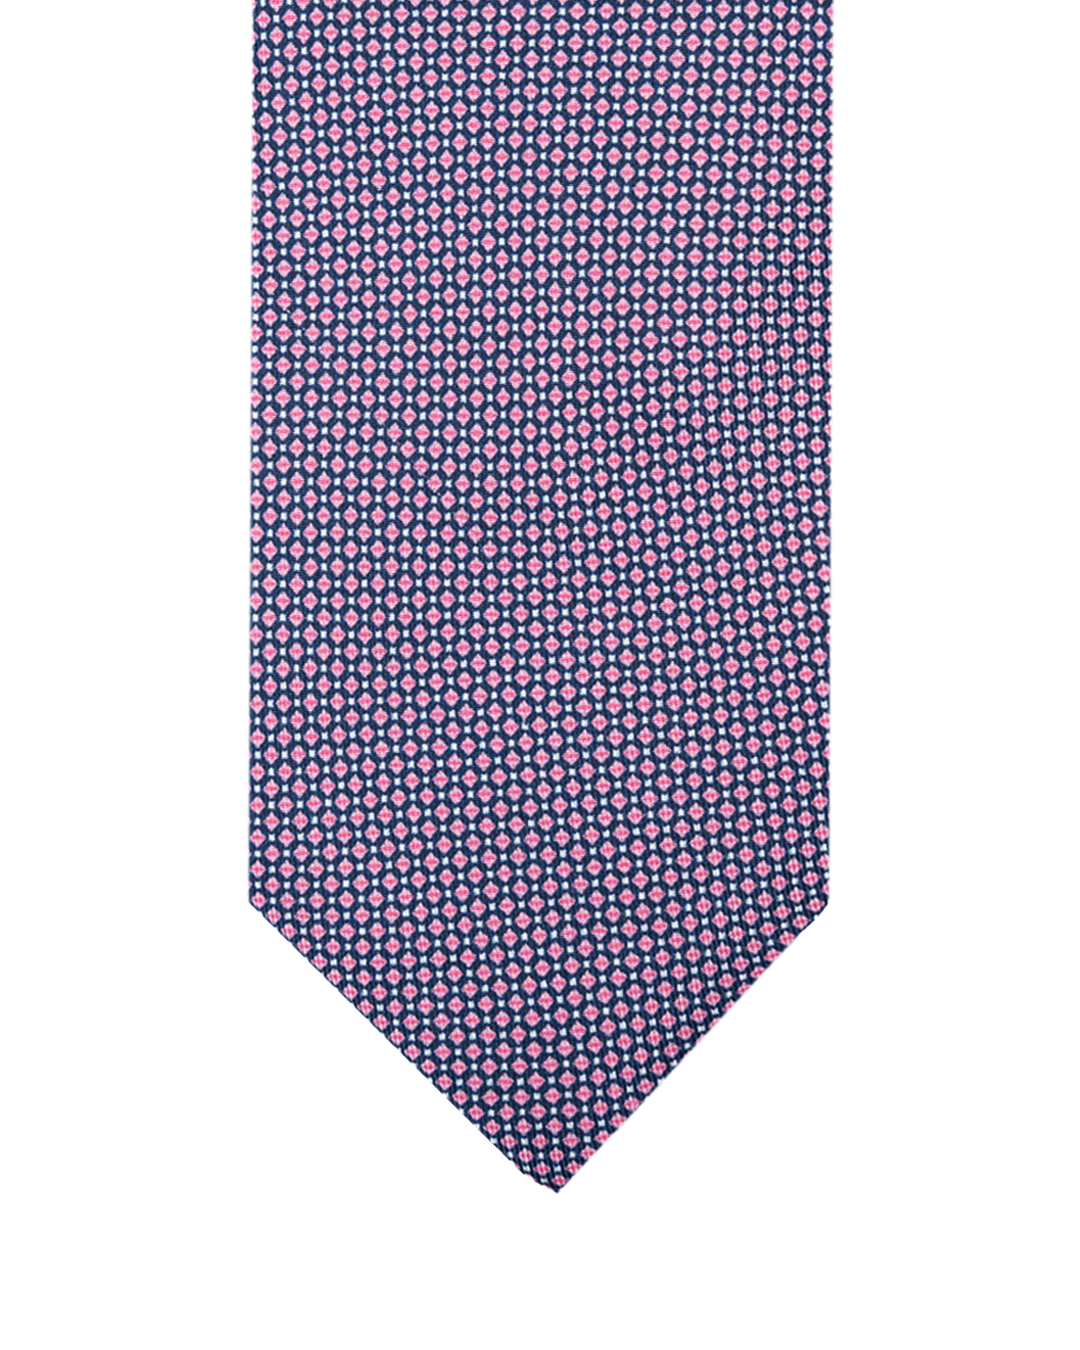 Gagliardi Ties One Size Gagliardi Pink Geometric Italian Silk Printed Tie